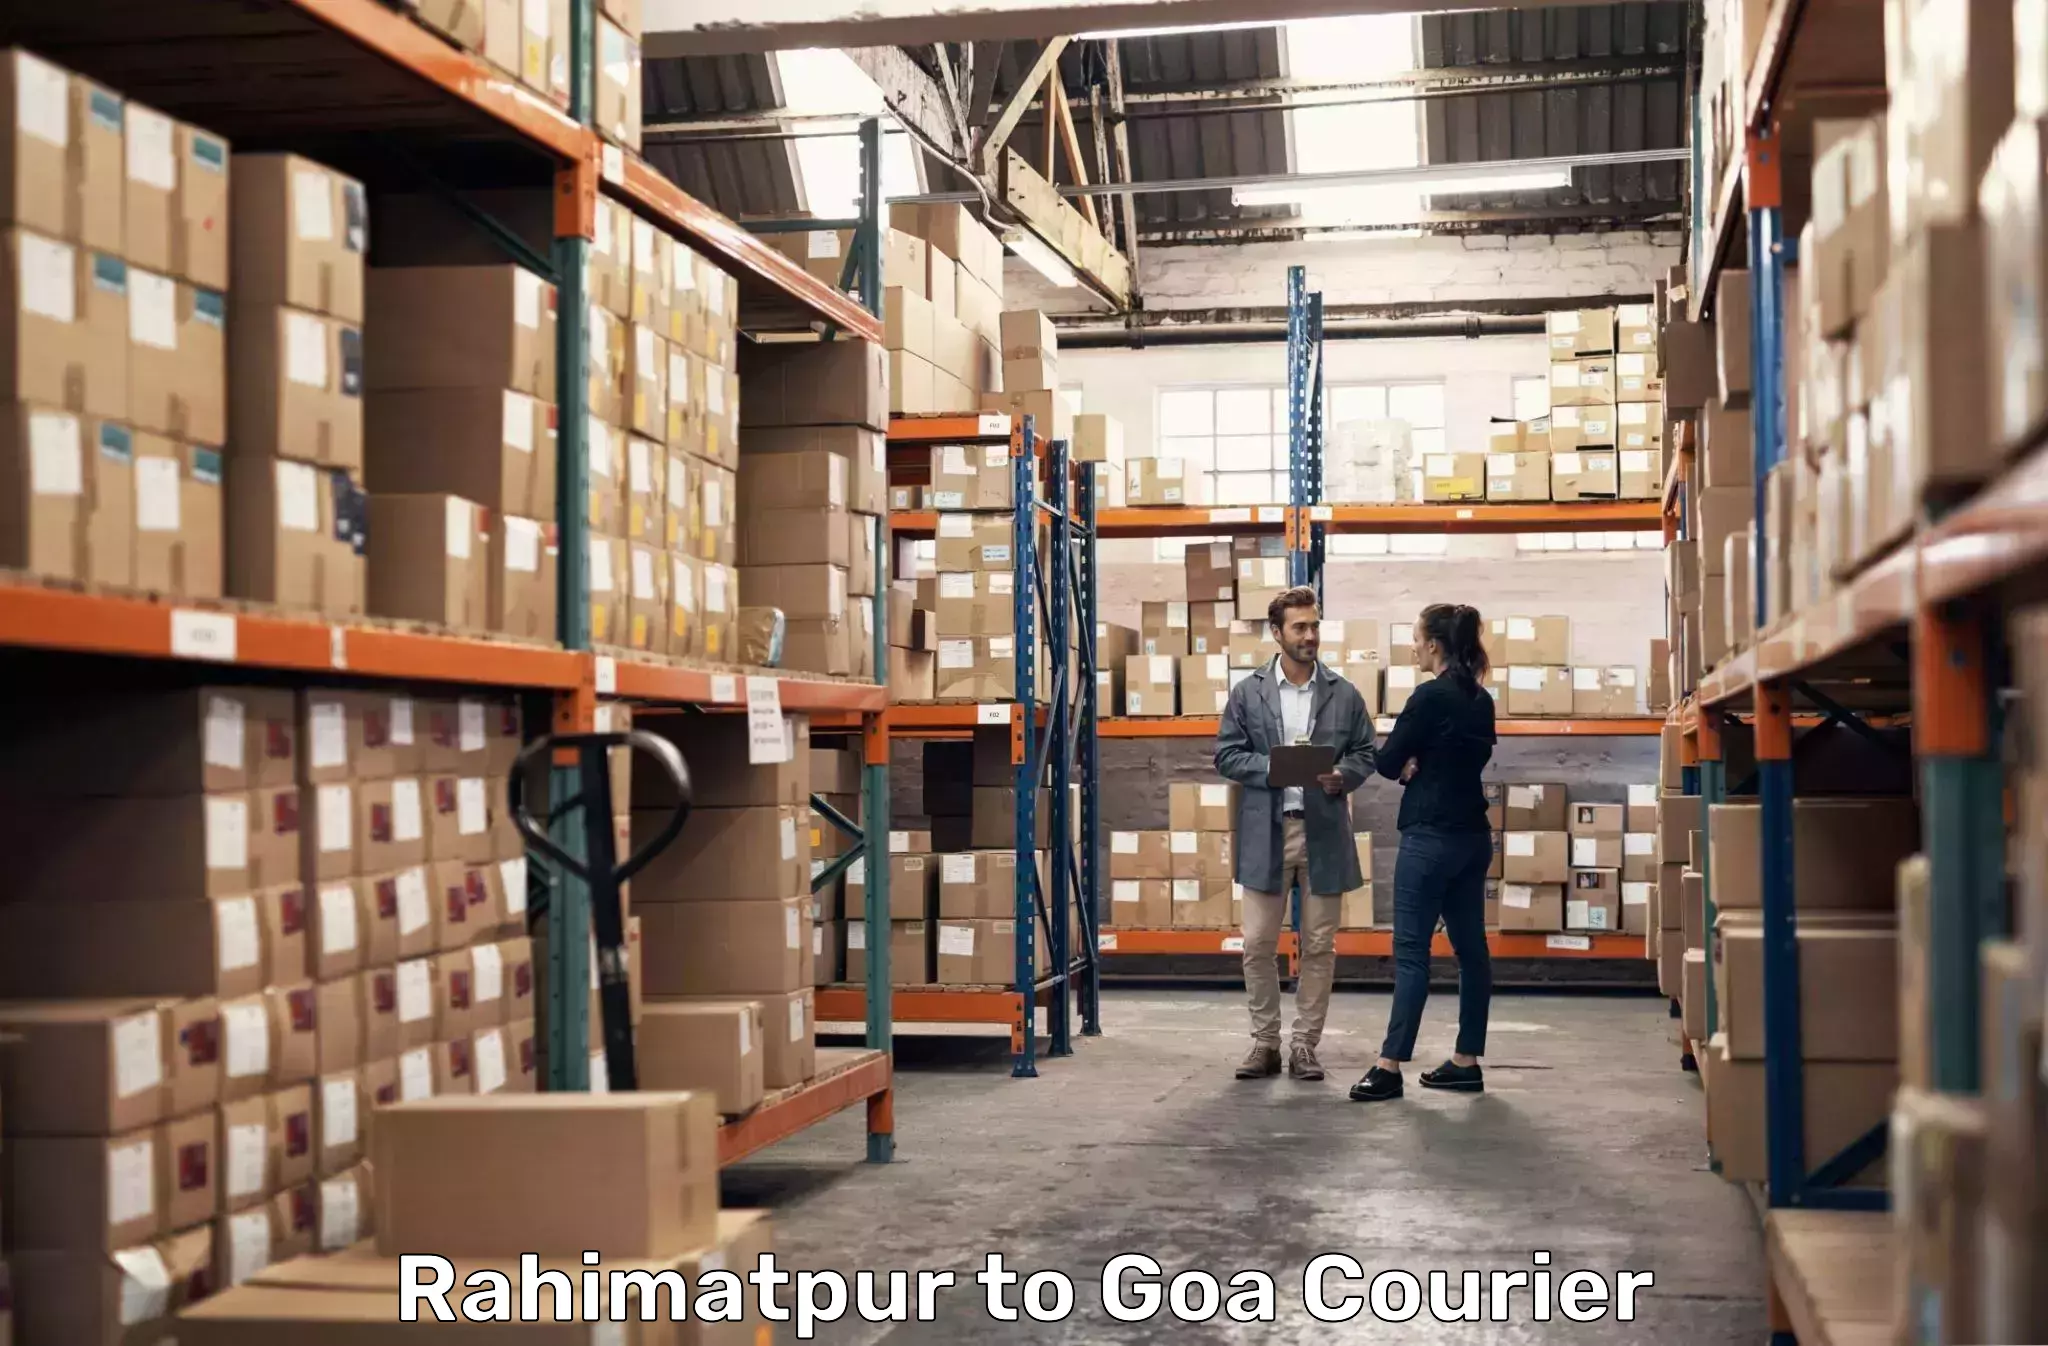 Express logistics service Rahimatpur to Margao